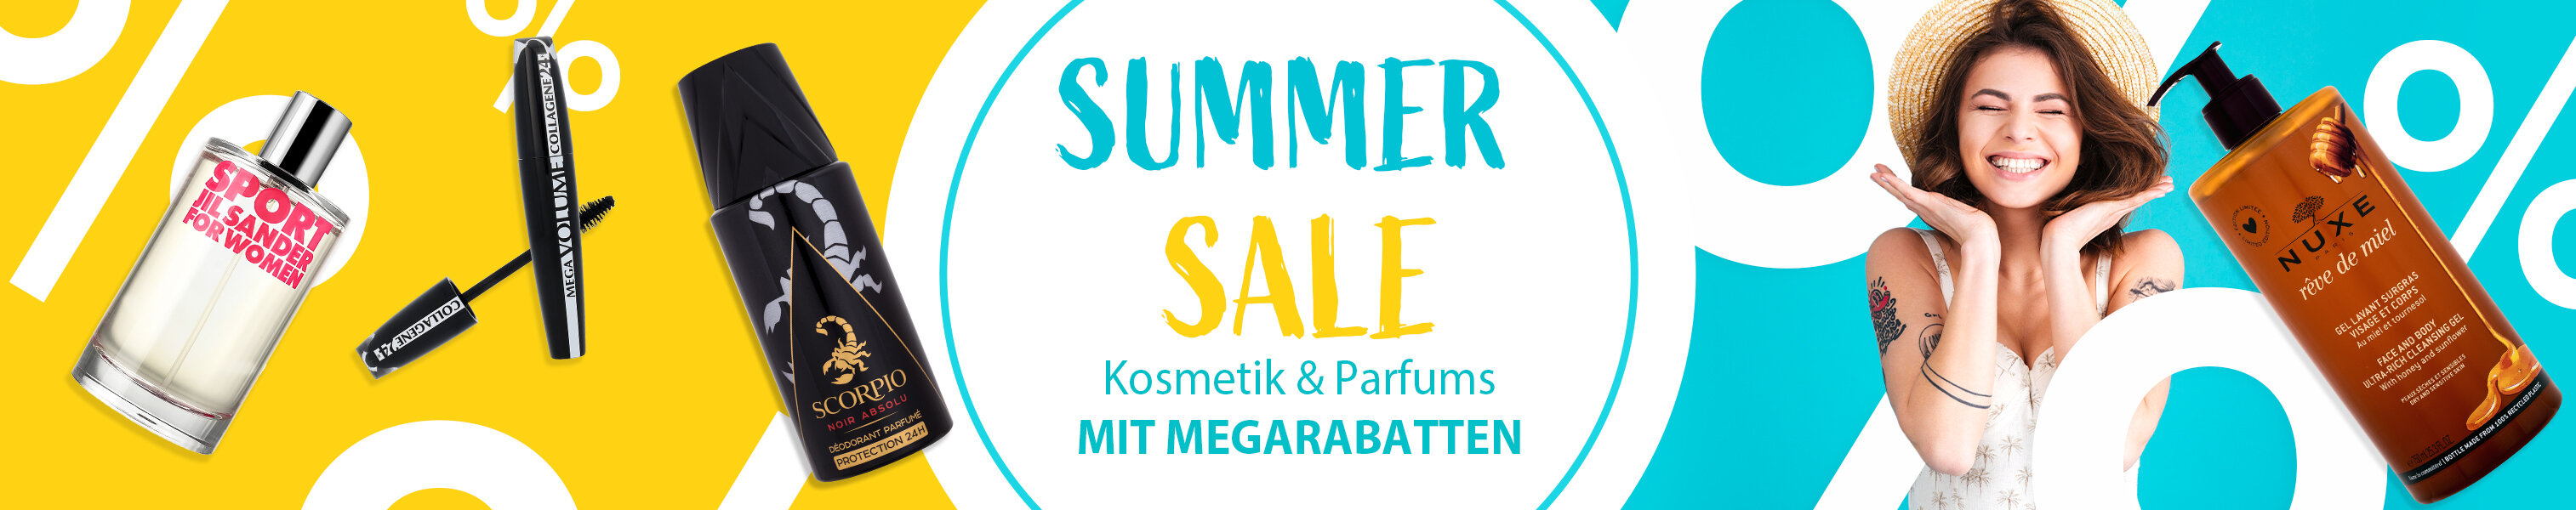 internal_MIX-brands_discount_summer-sale-20.6-3.7.